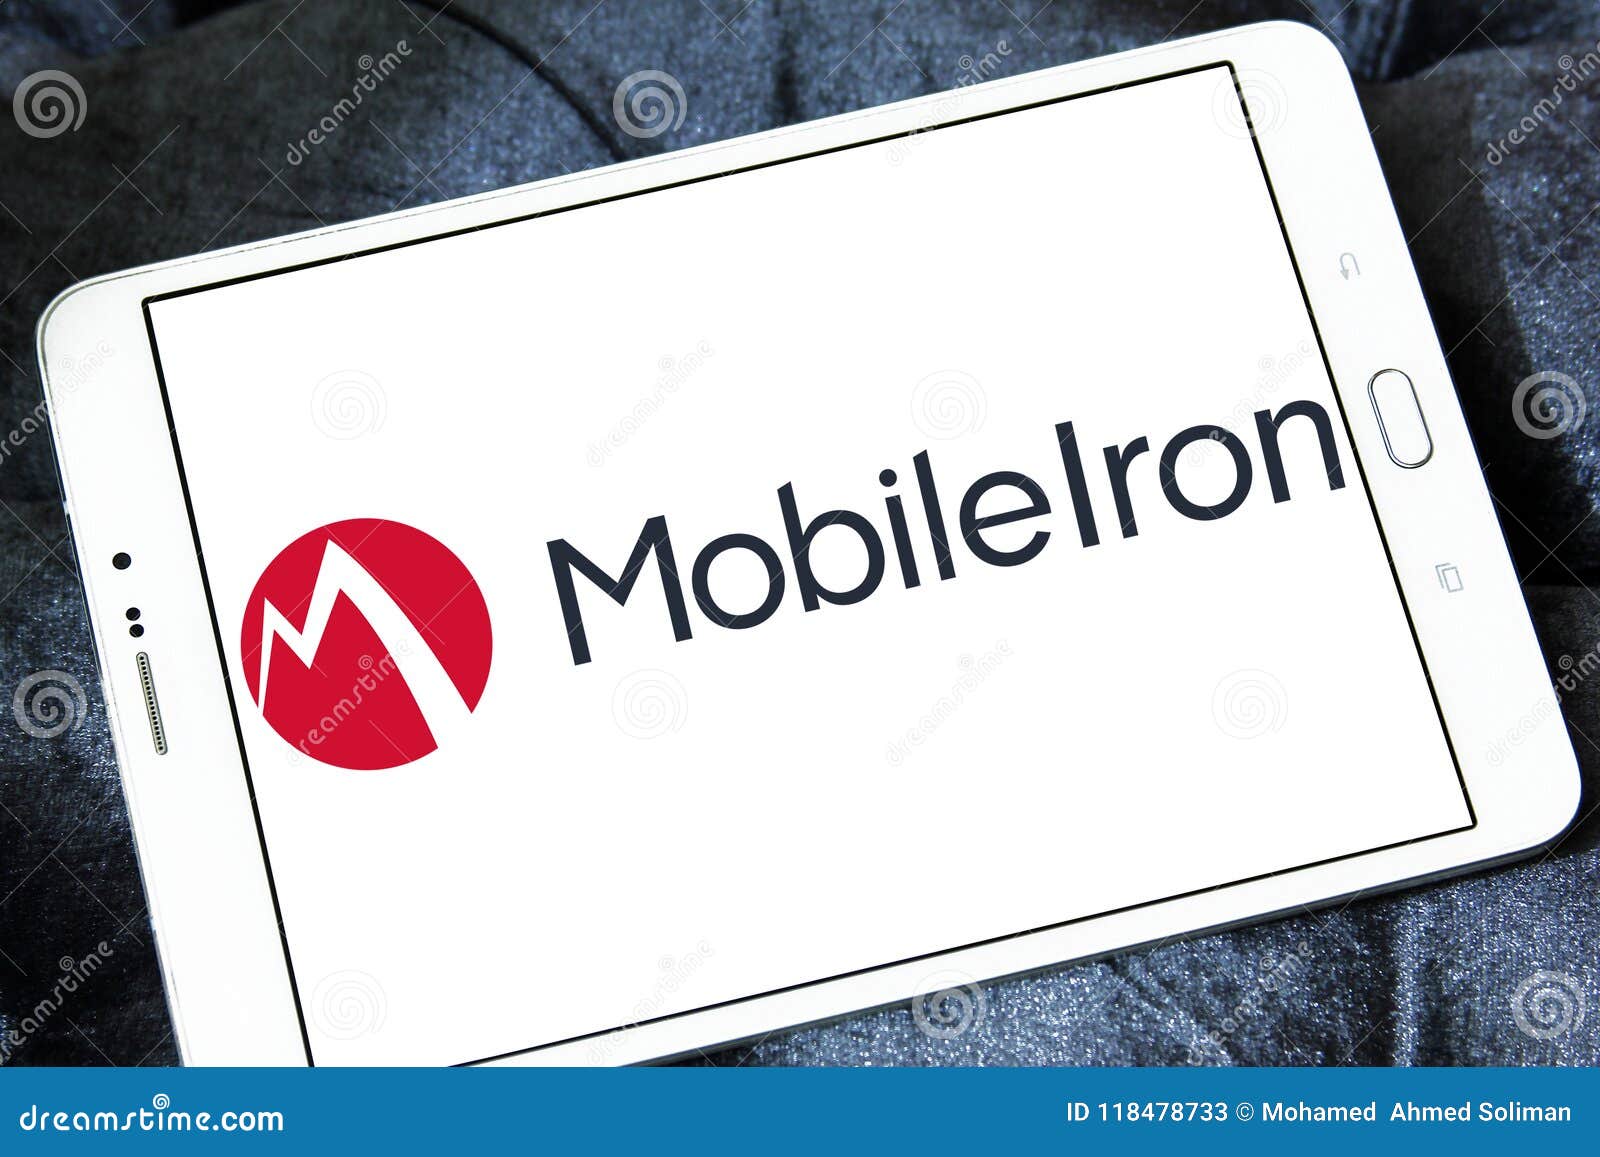 Mobileiron Software Company Logo Editorial Stock Photo Image Of